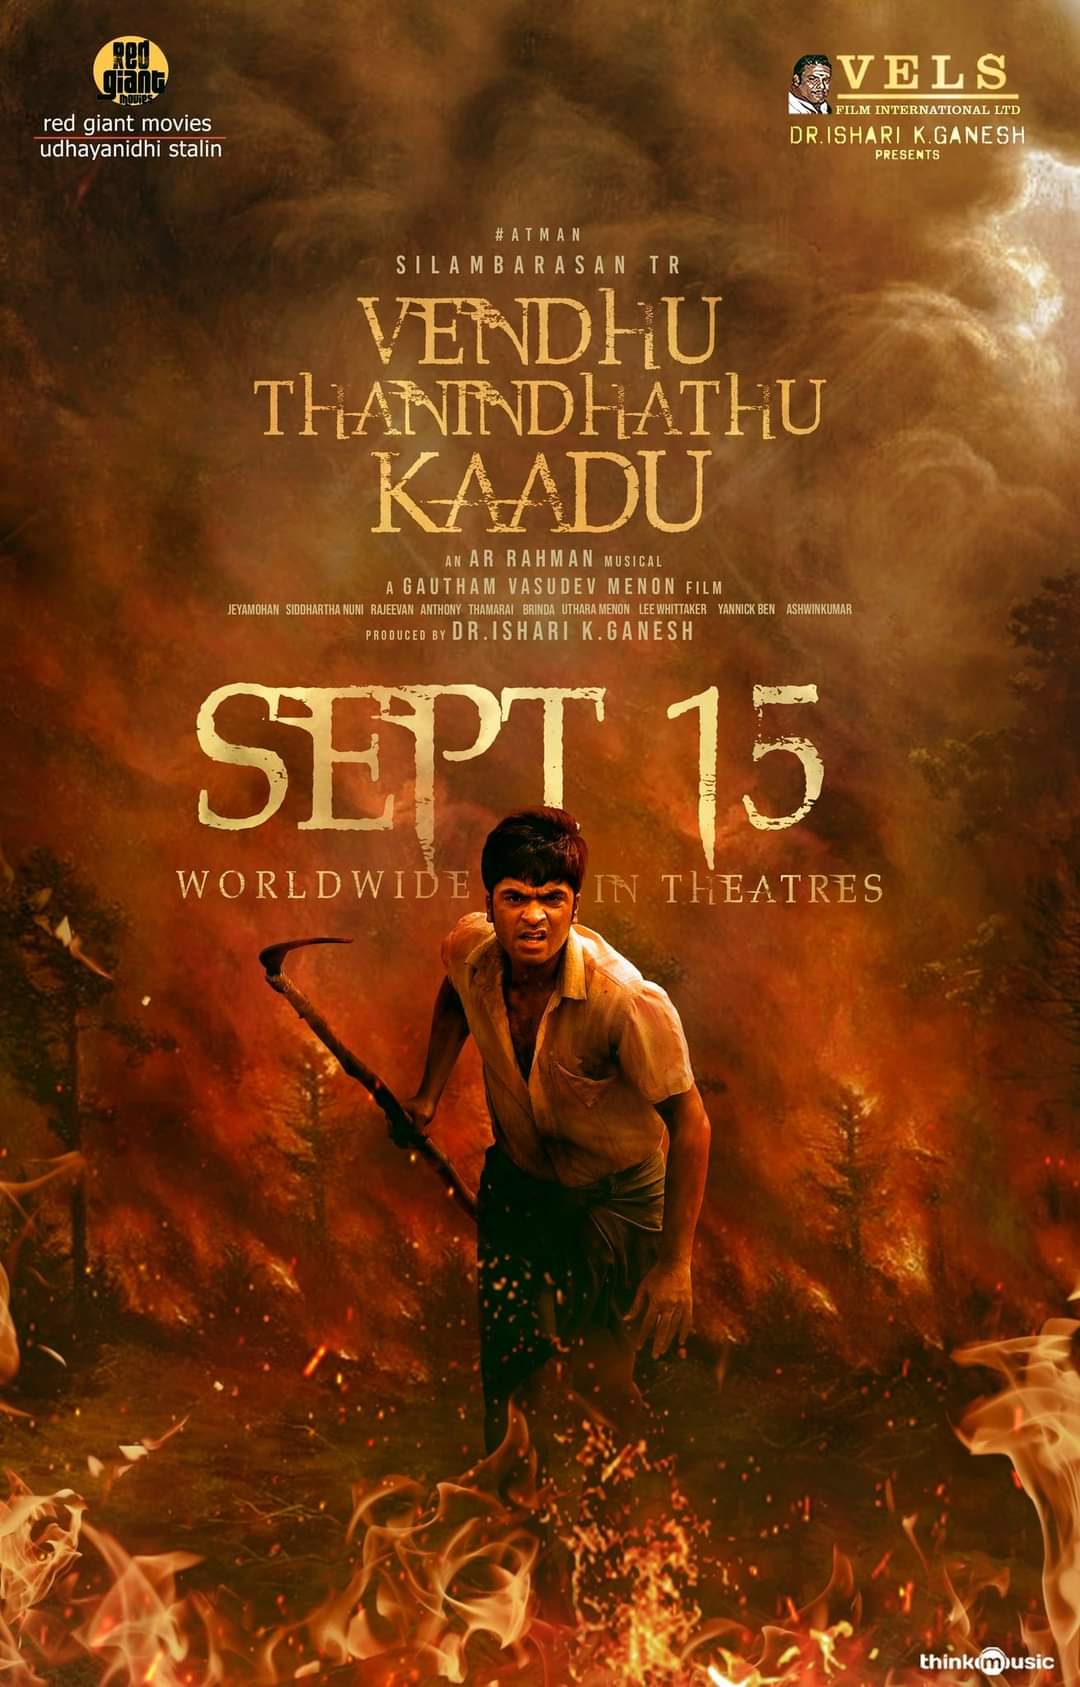 Silambarasan TR Venthu Thaninthathu Kaadu Movie Release Date Poster